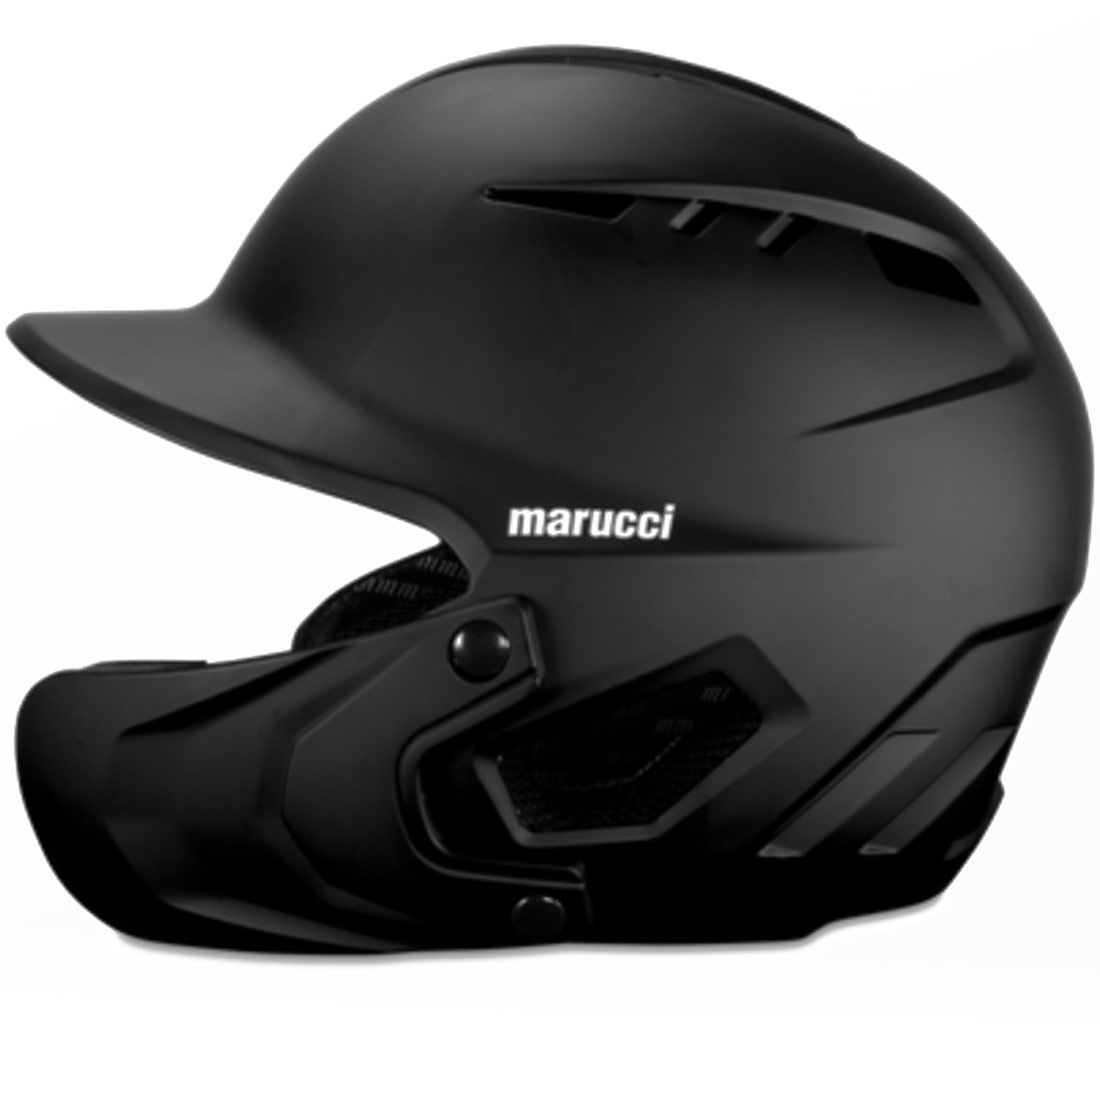 Marucci Duravent Batting Helmet with Jaw Guard MBHDVJG